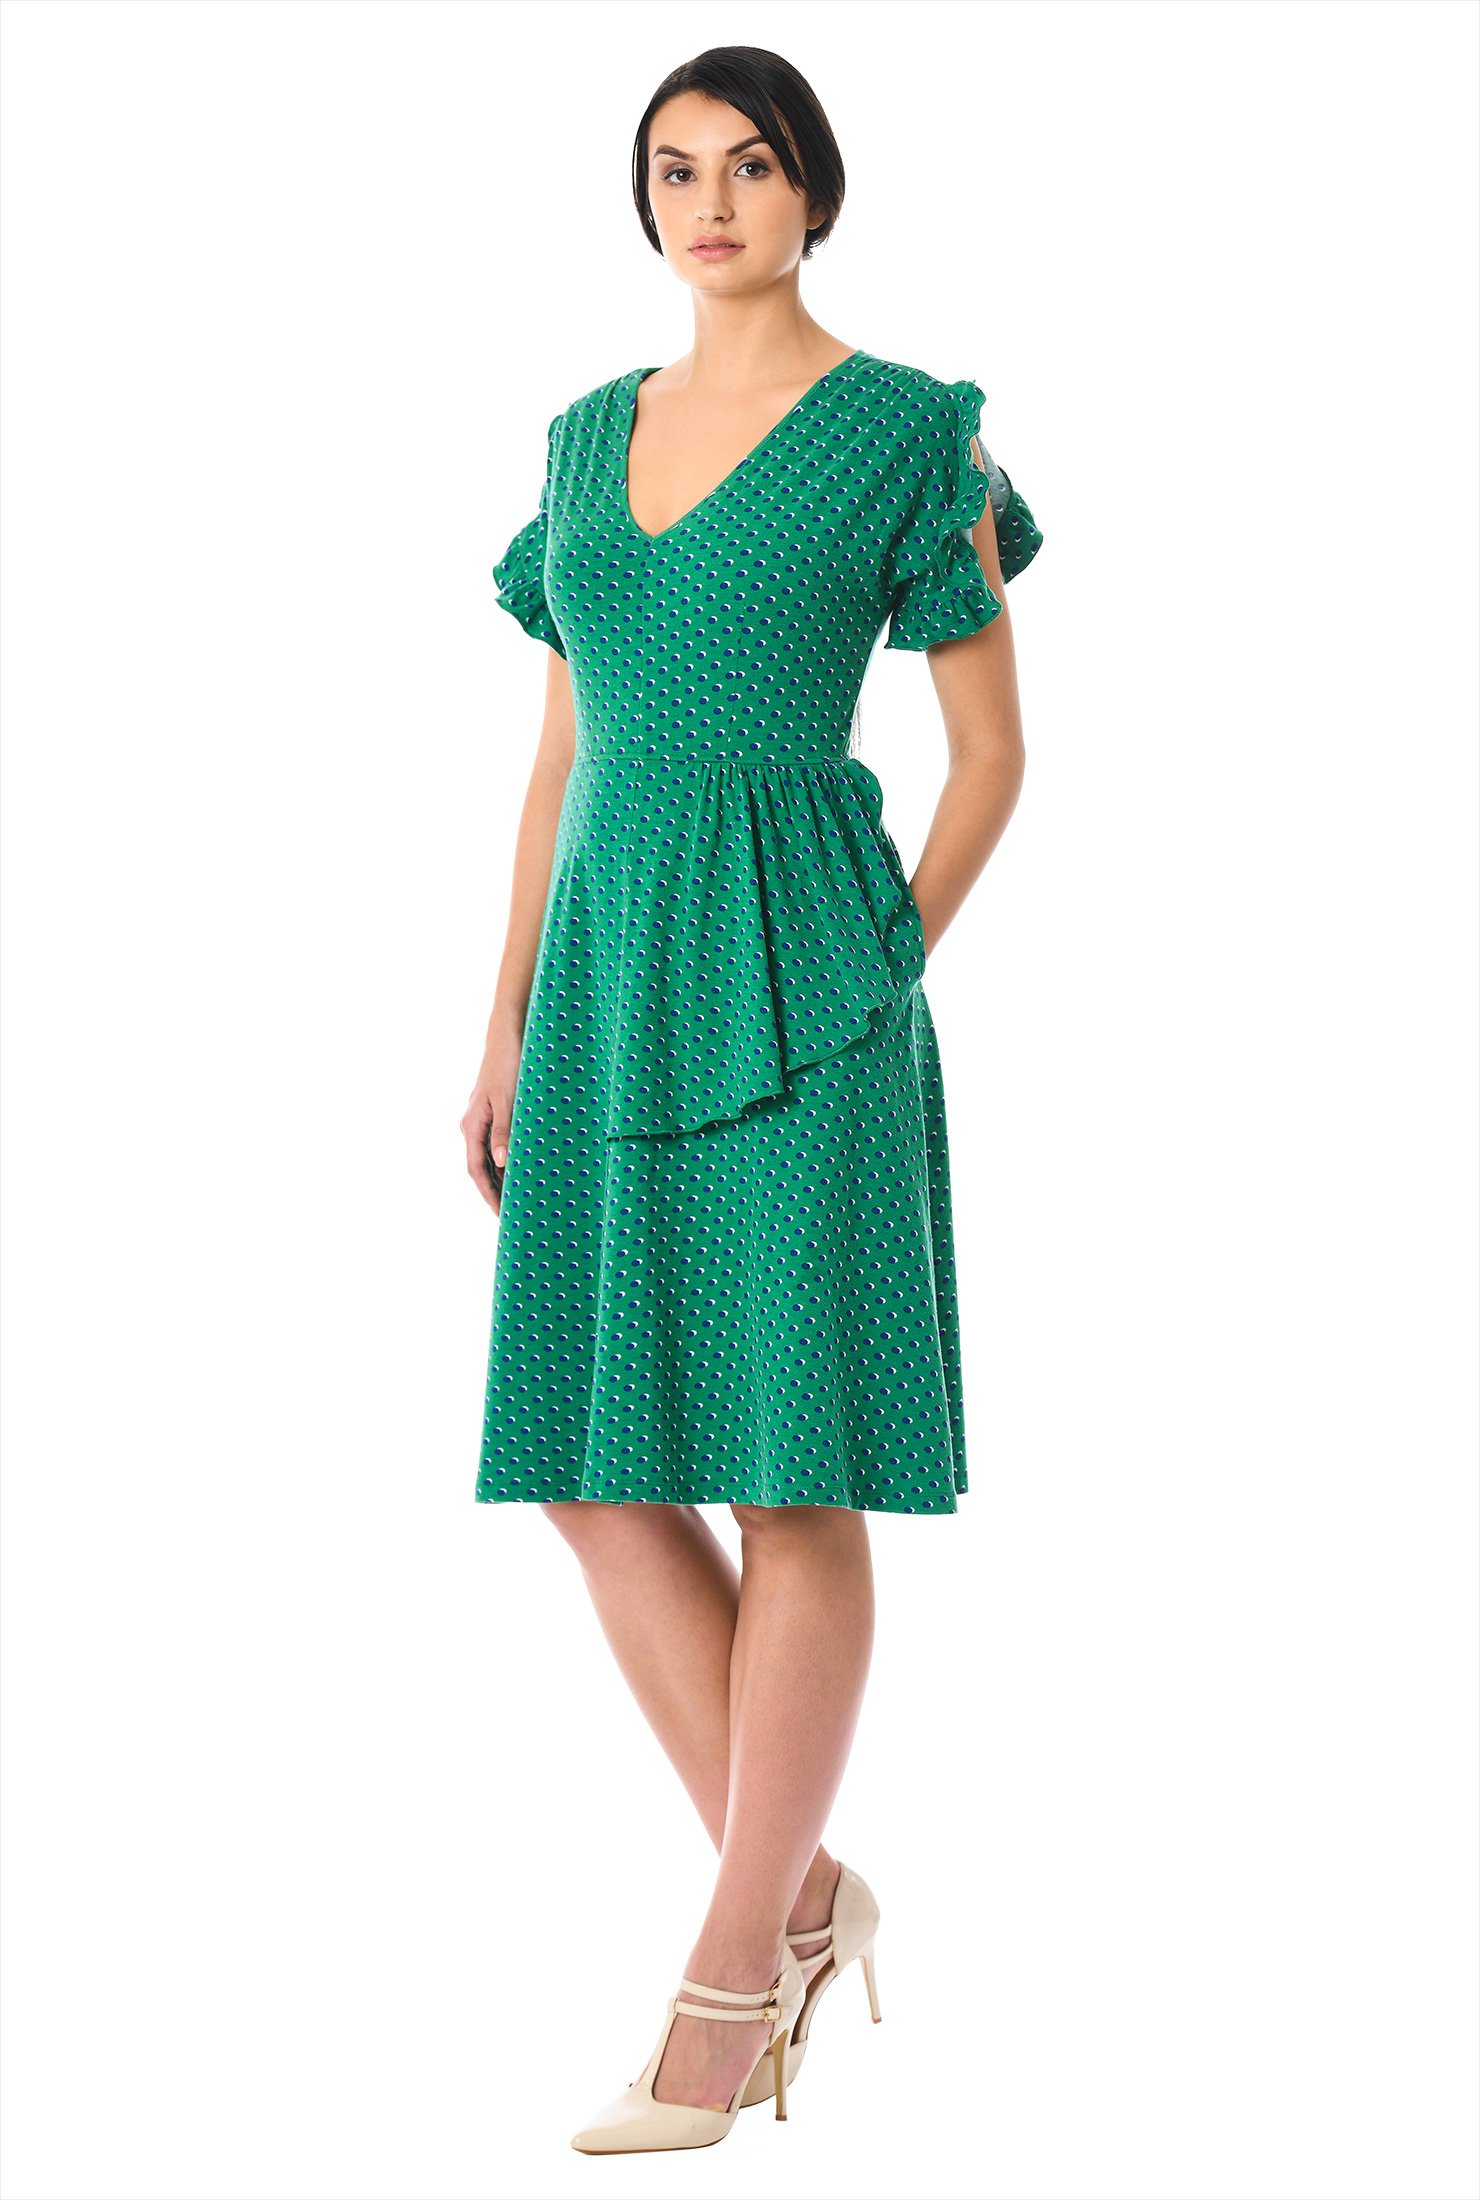 Shop Ruffle polka dot print cotton knit dress | eShakti